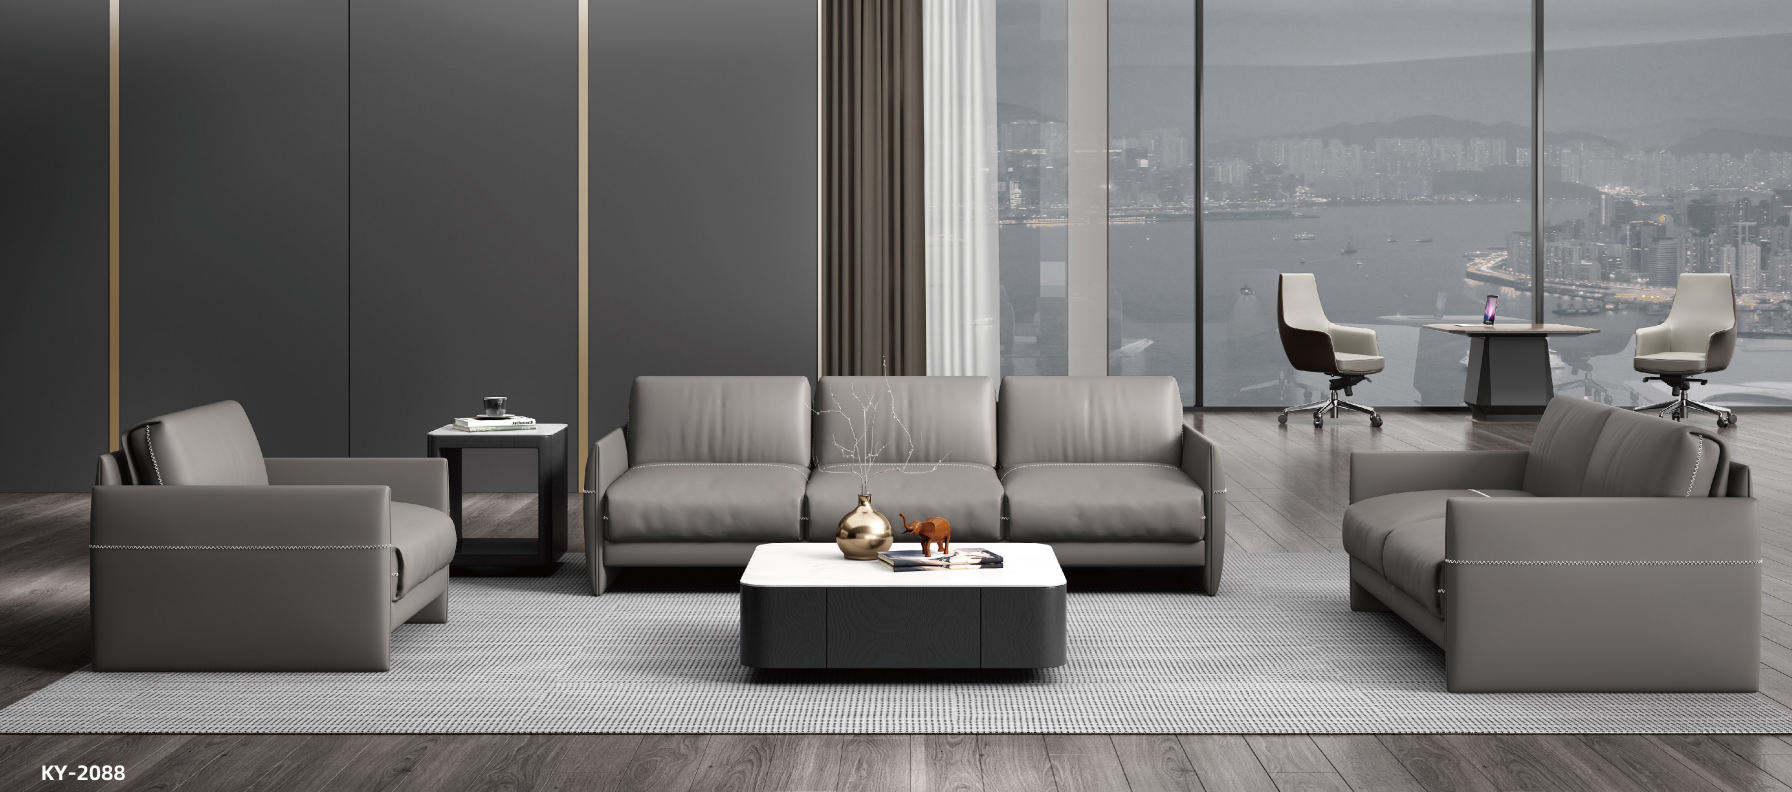 Light grey sofa for CEO room 